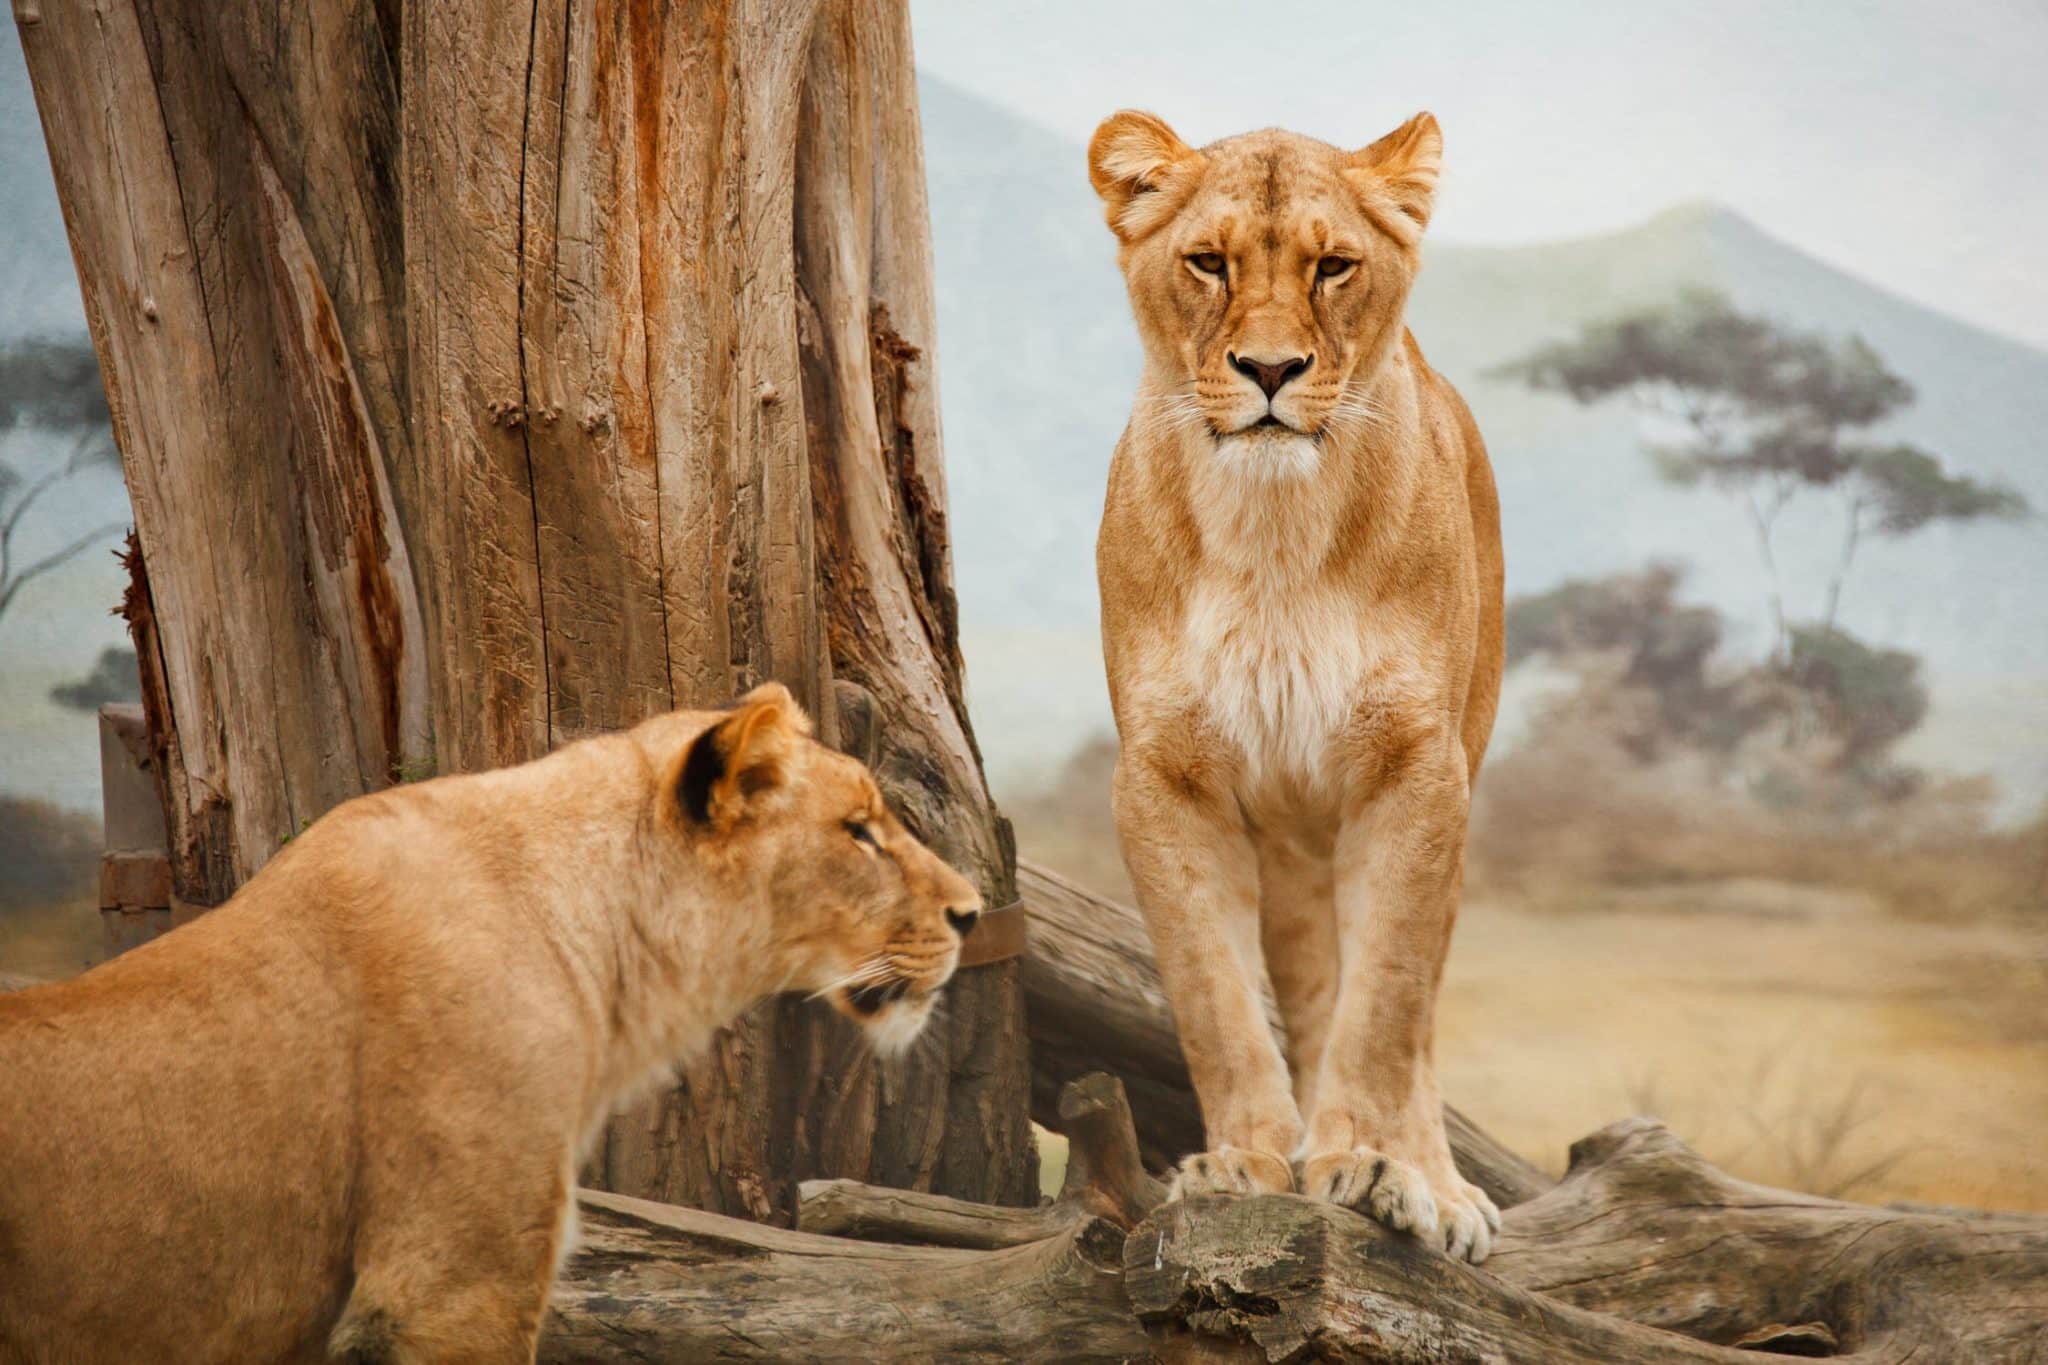 Mejores lugares para ver leones - Animals Around The Globe